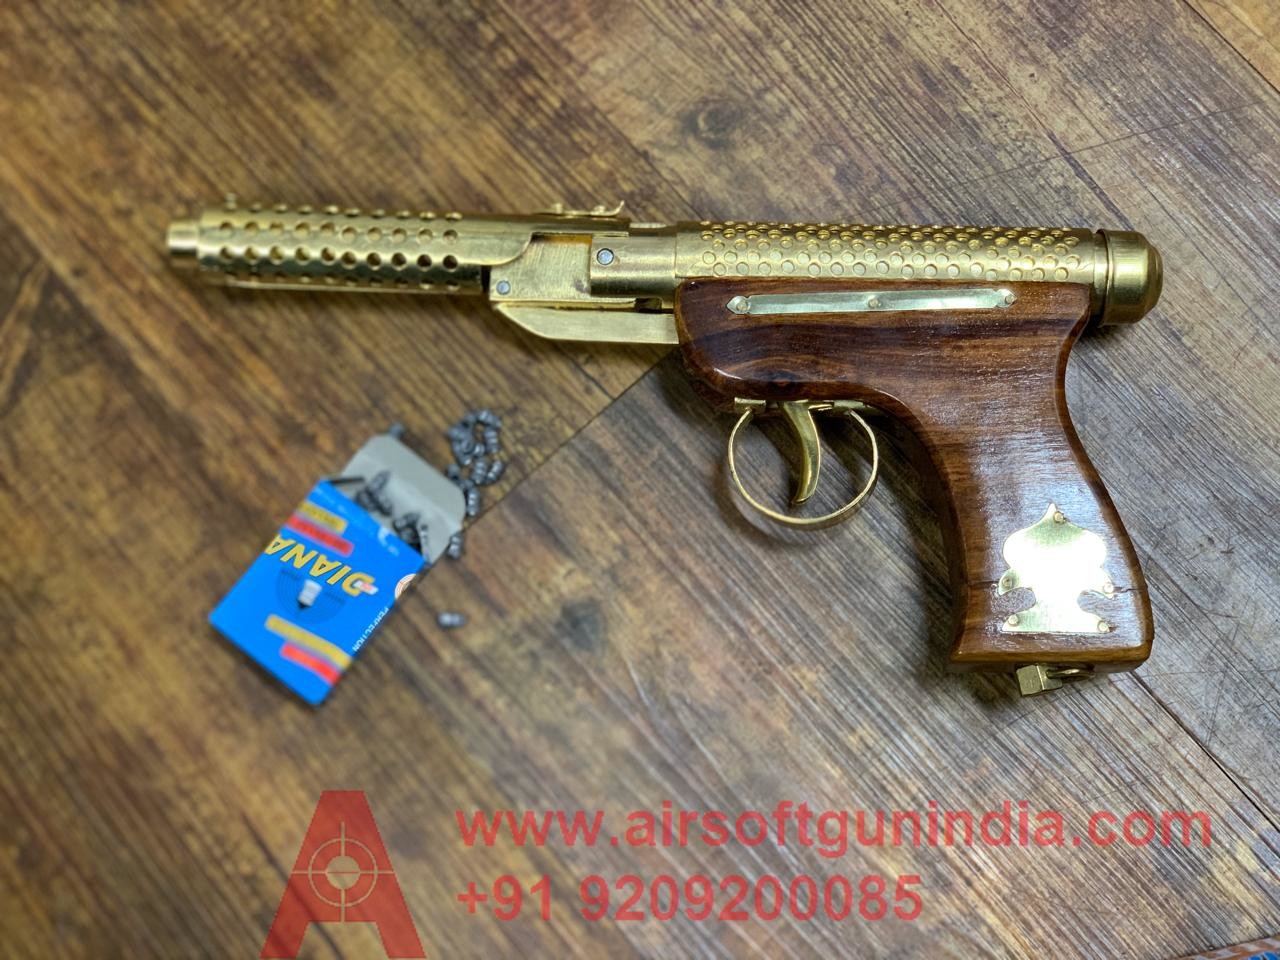 Bullet Mark 1 Golden Air Pistol